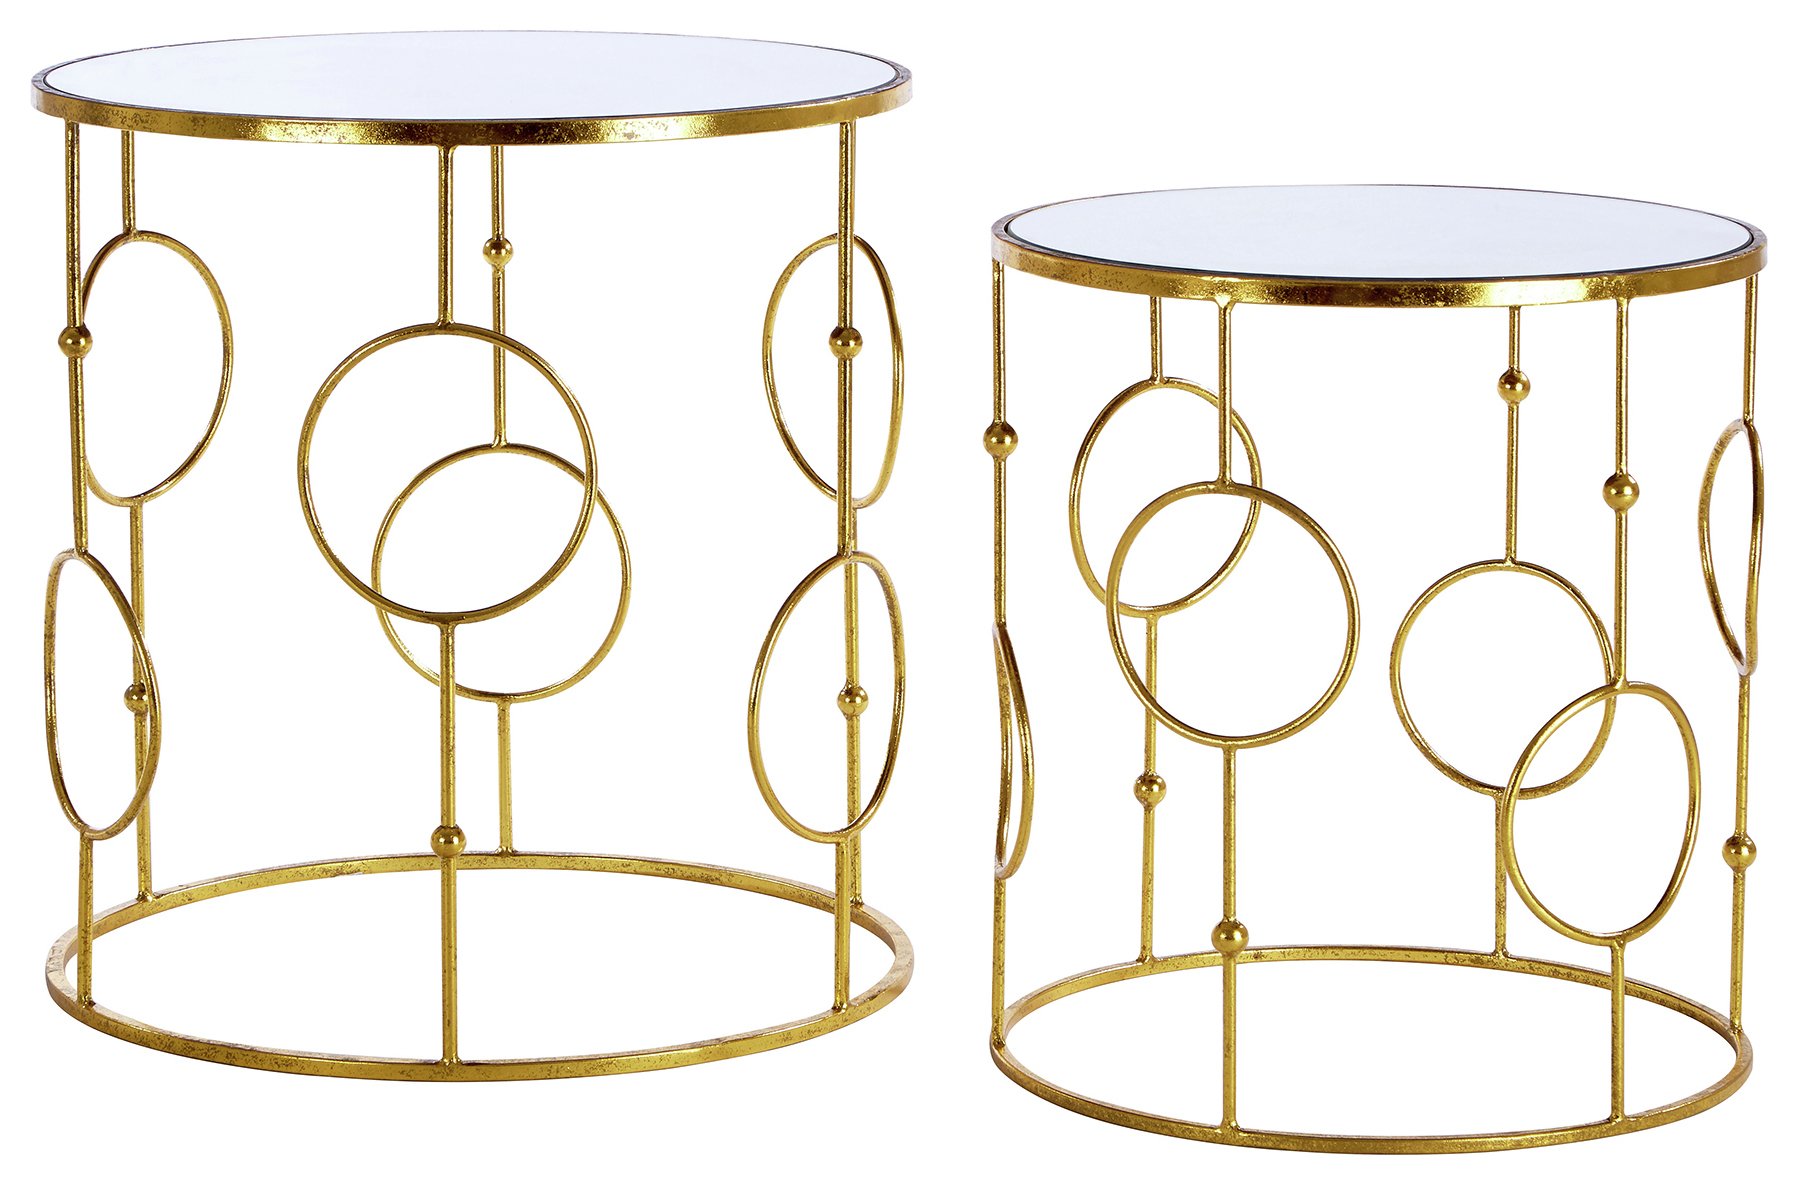 Premier Housewares Avantis Nest of 2 Tables - Gold Frame